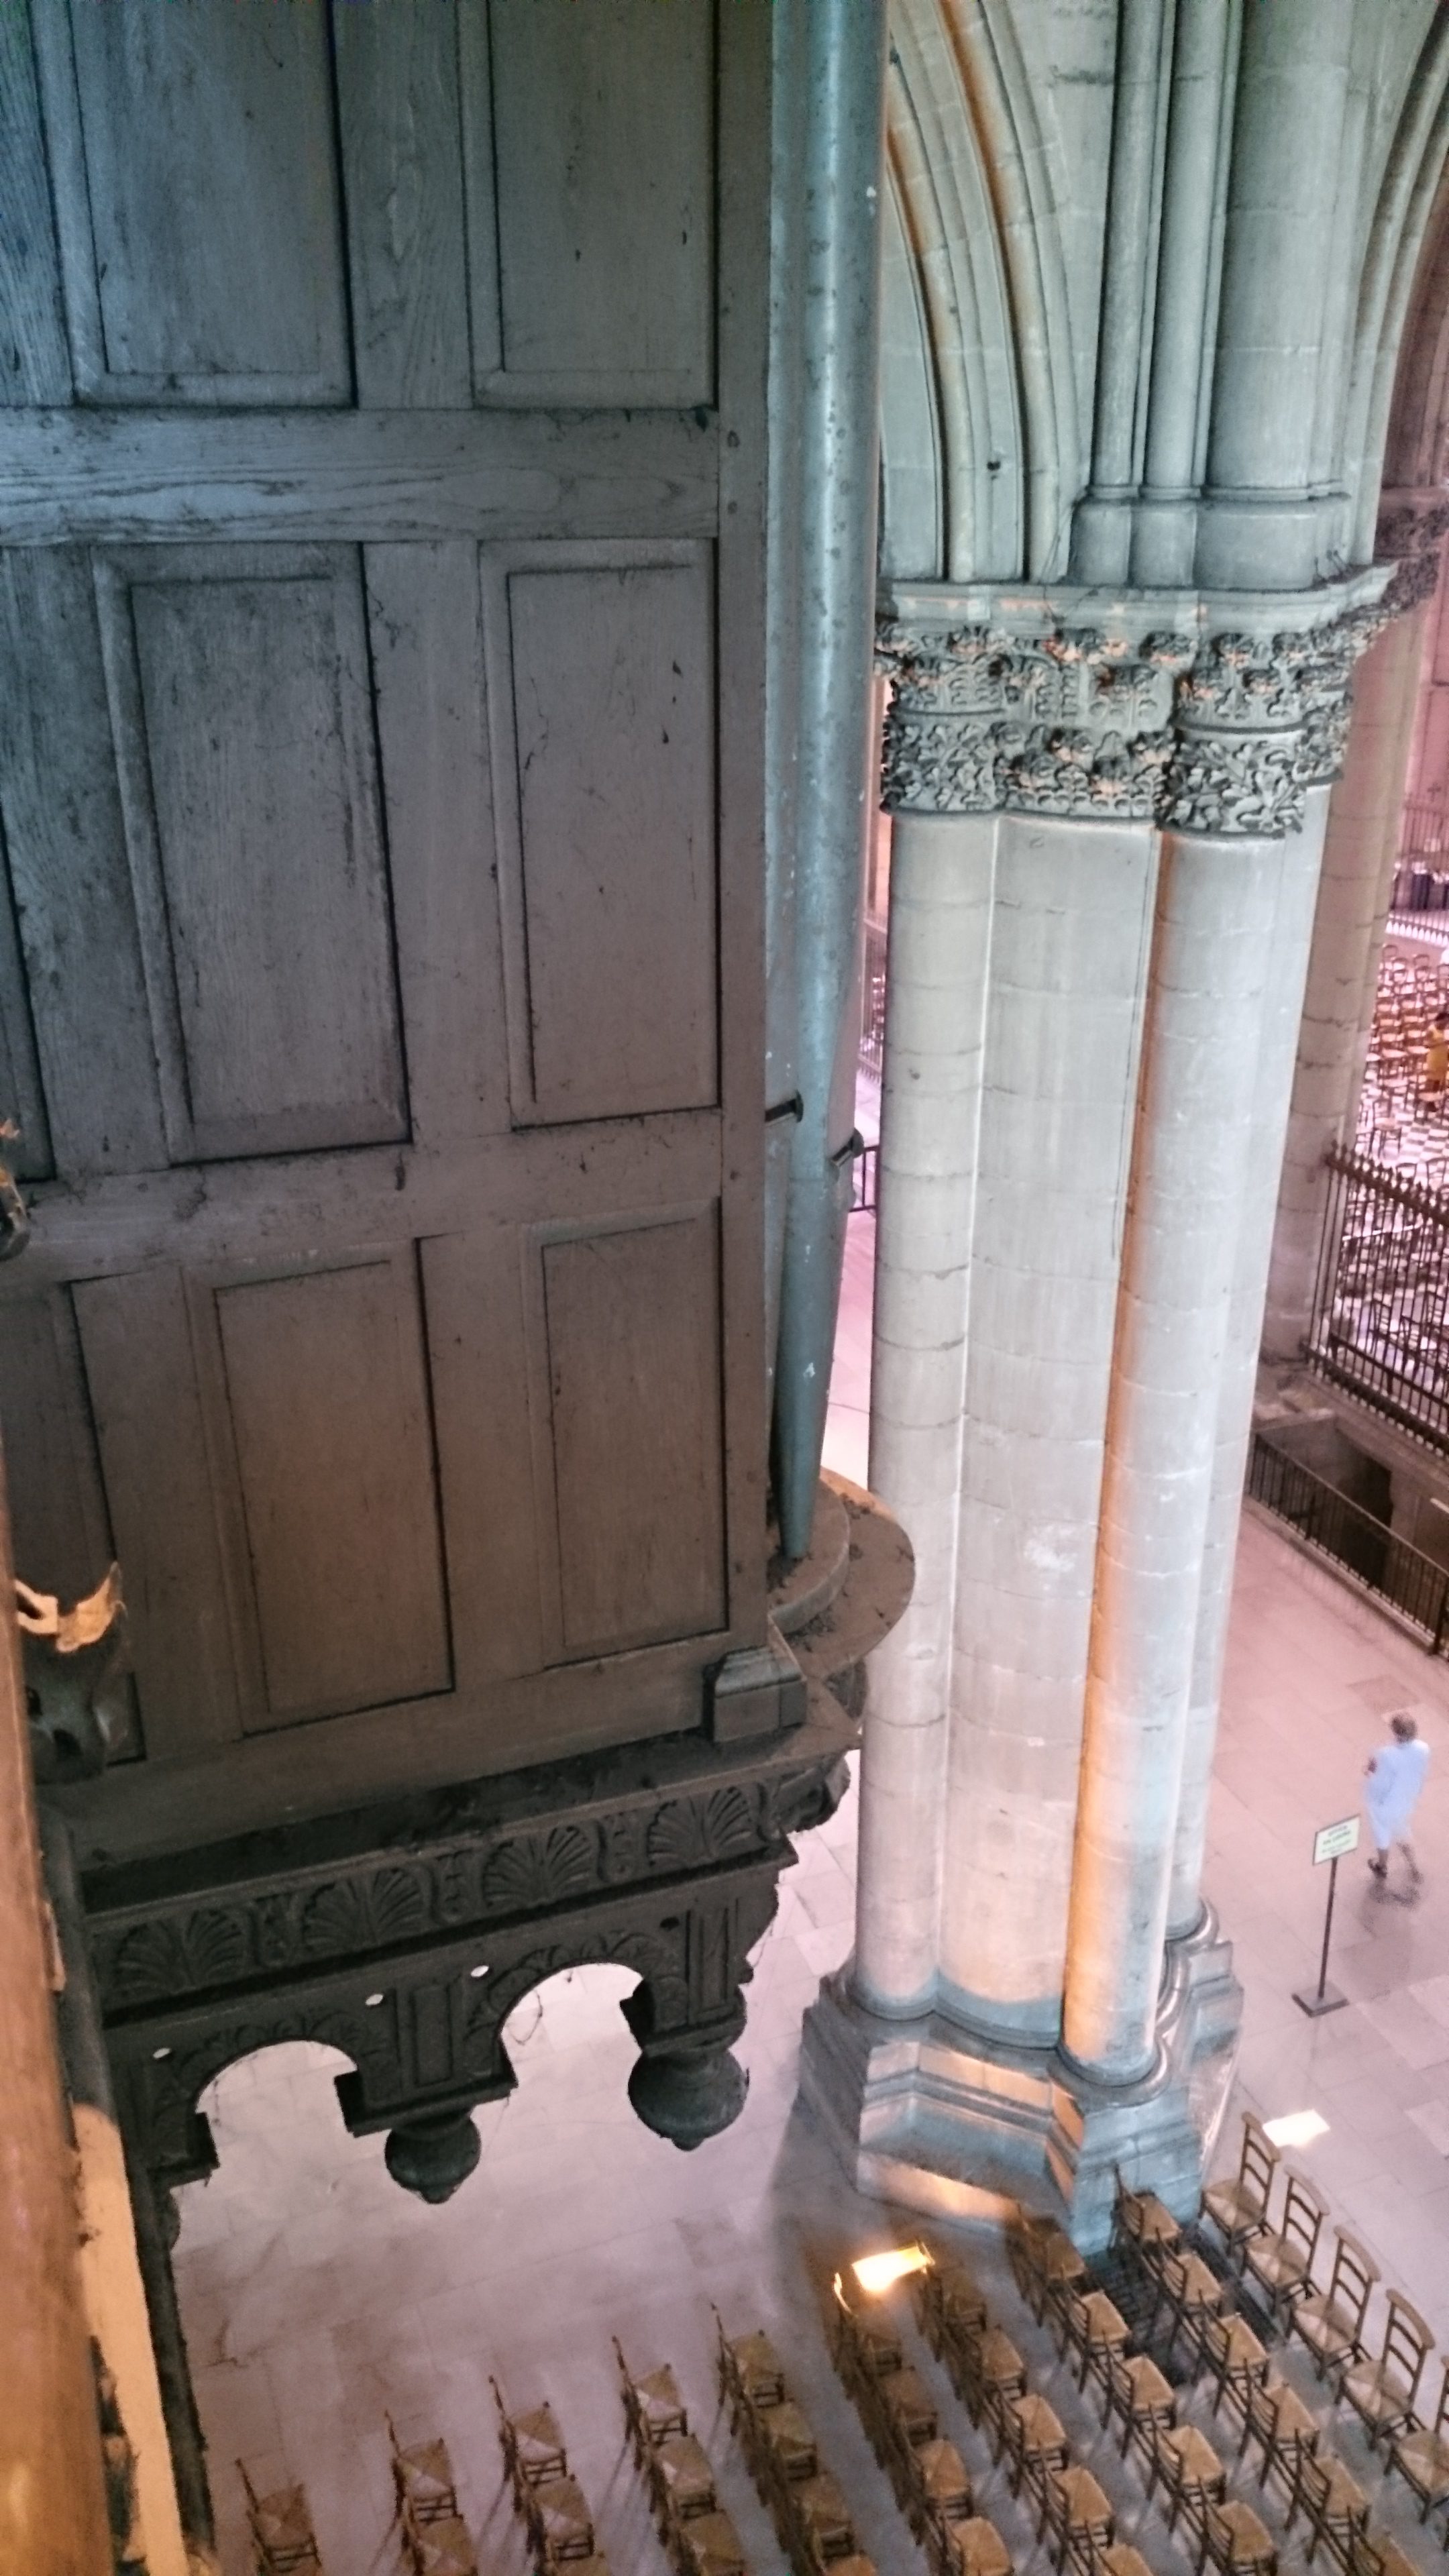 positif de dos de l'orgue de la cathédrale de Reims